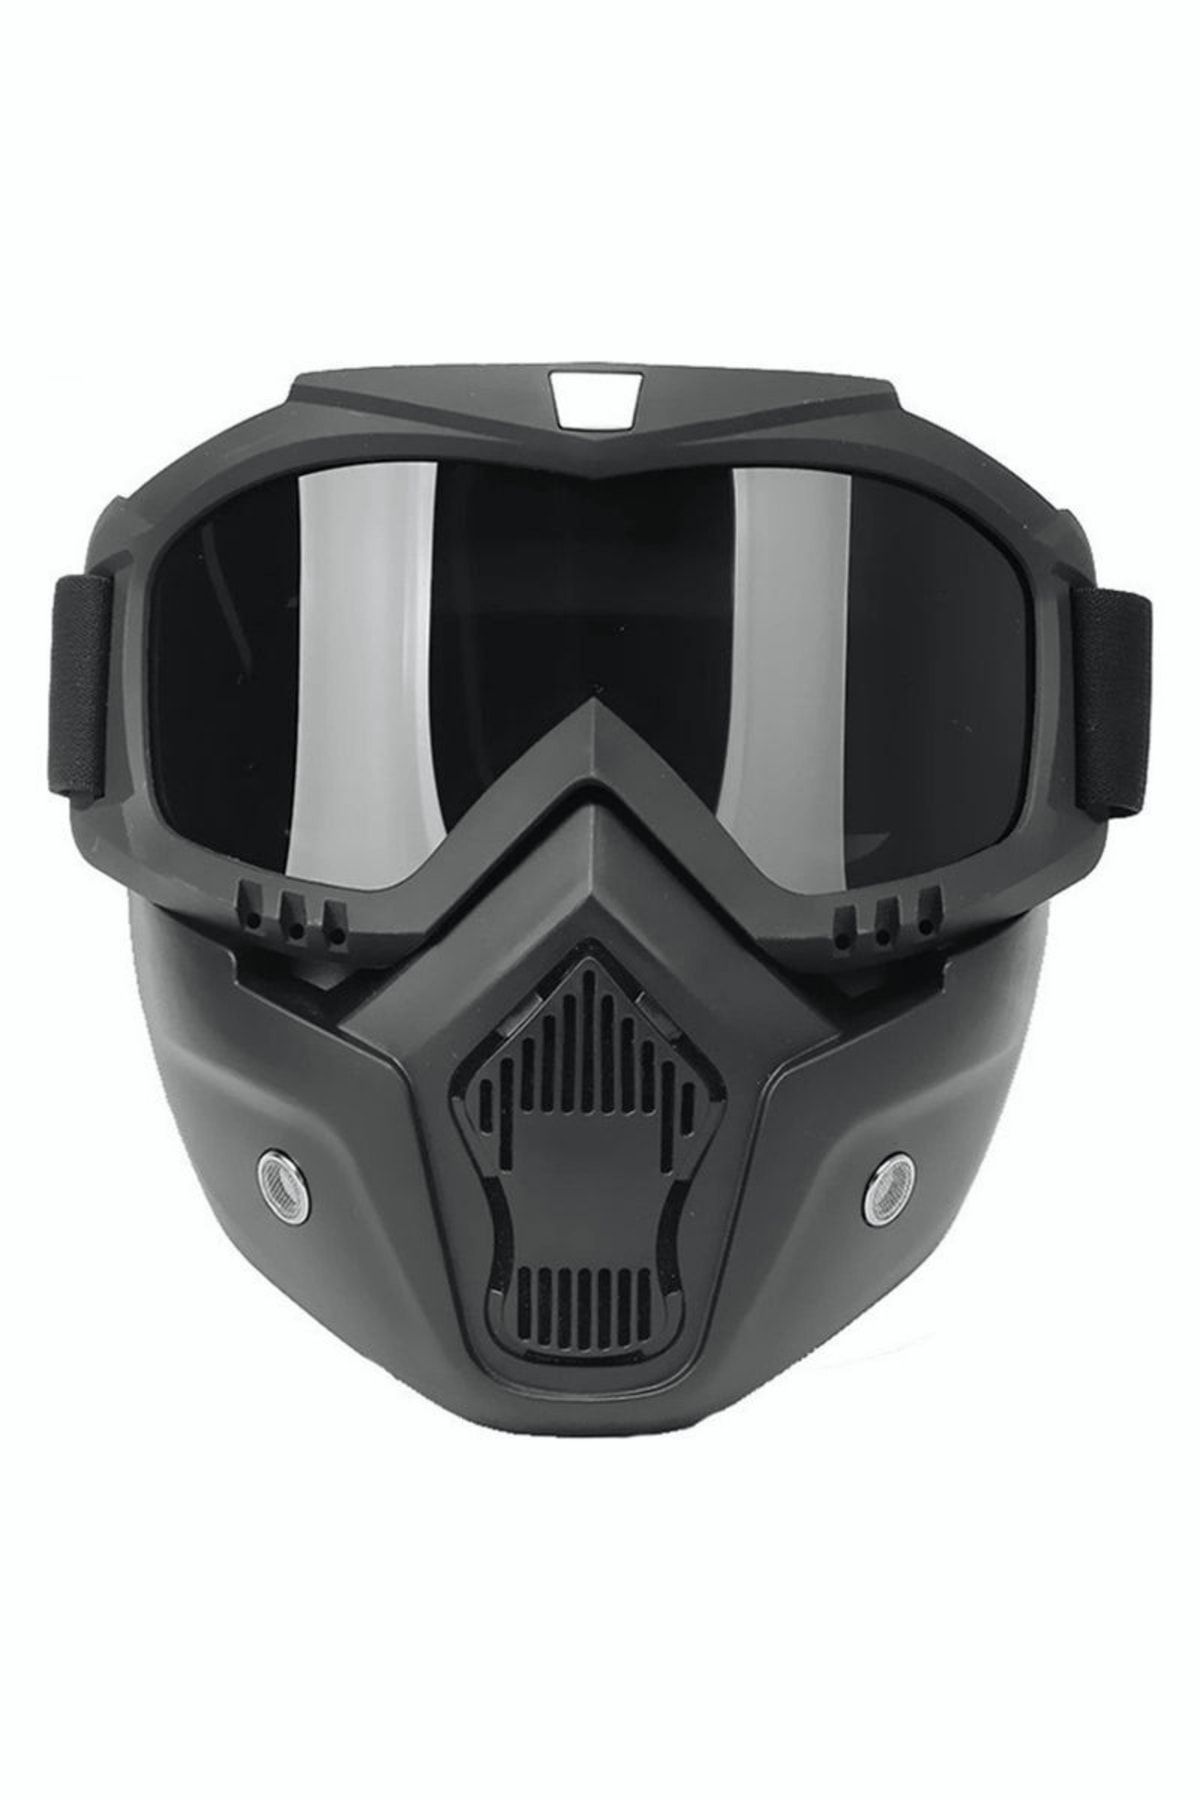 ebakbak Cross Motosiklet Bisiklet Gözlüğü Açık Kask Maskesi Süngerli Bant Lastikli Jet Maske Siyah Cam